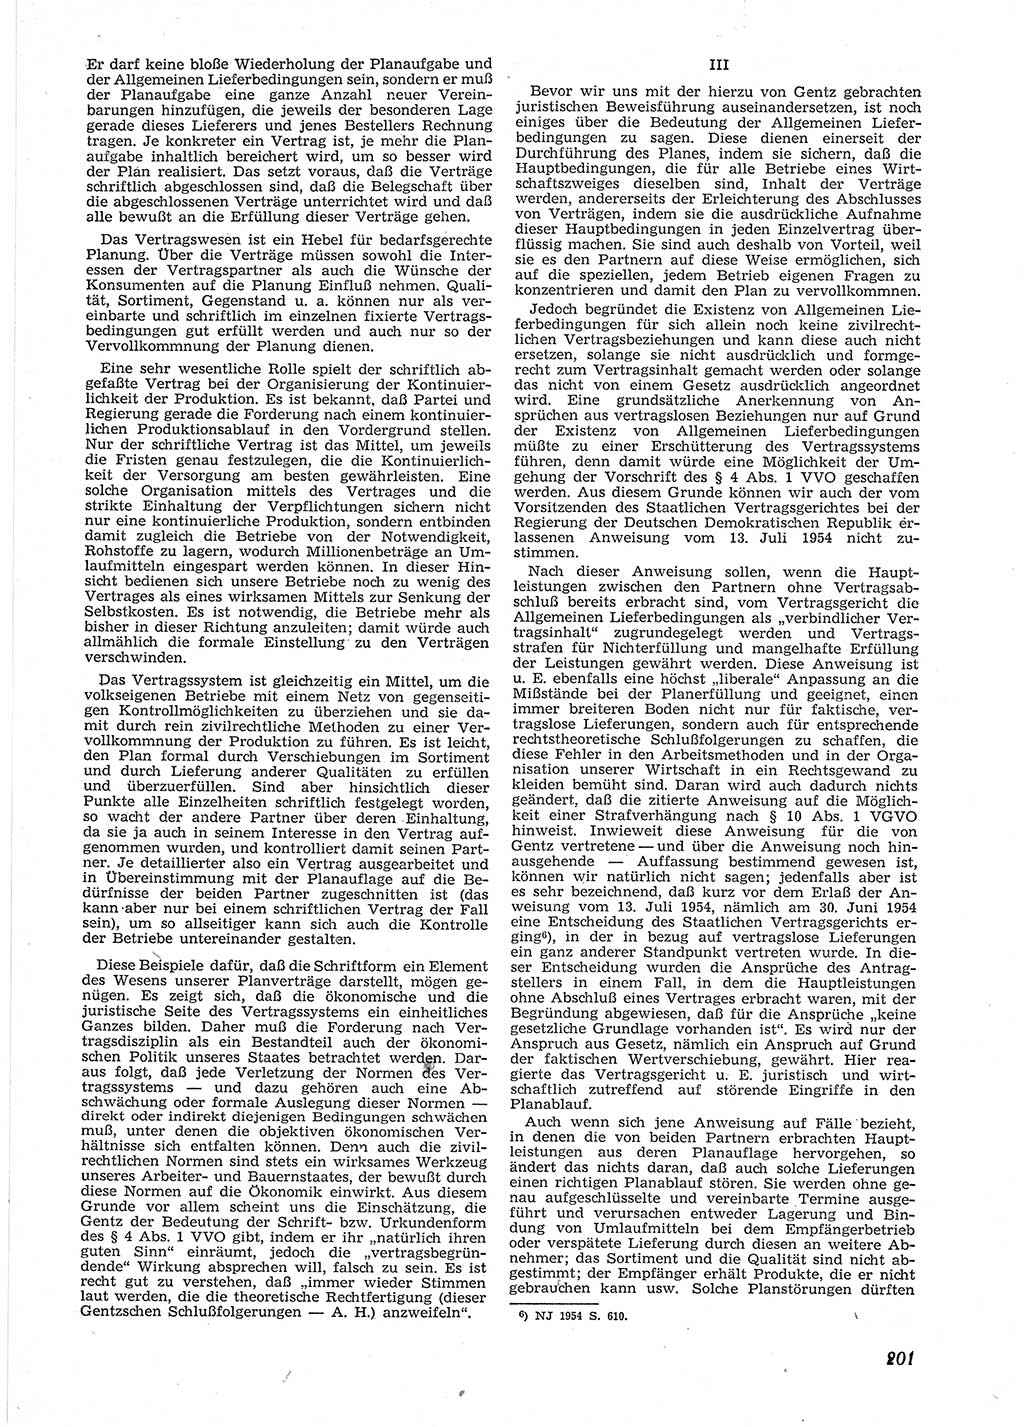 Neue Justiz (NJ), Zeitschrift für Recht und Rechtswissenschaft [Deutsche Demokratische Republik (DDR)], 9. Jahrgang 1955, Seite 201 (NJ DDR 1955, S. 201)